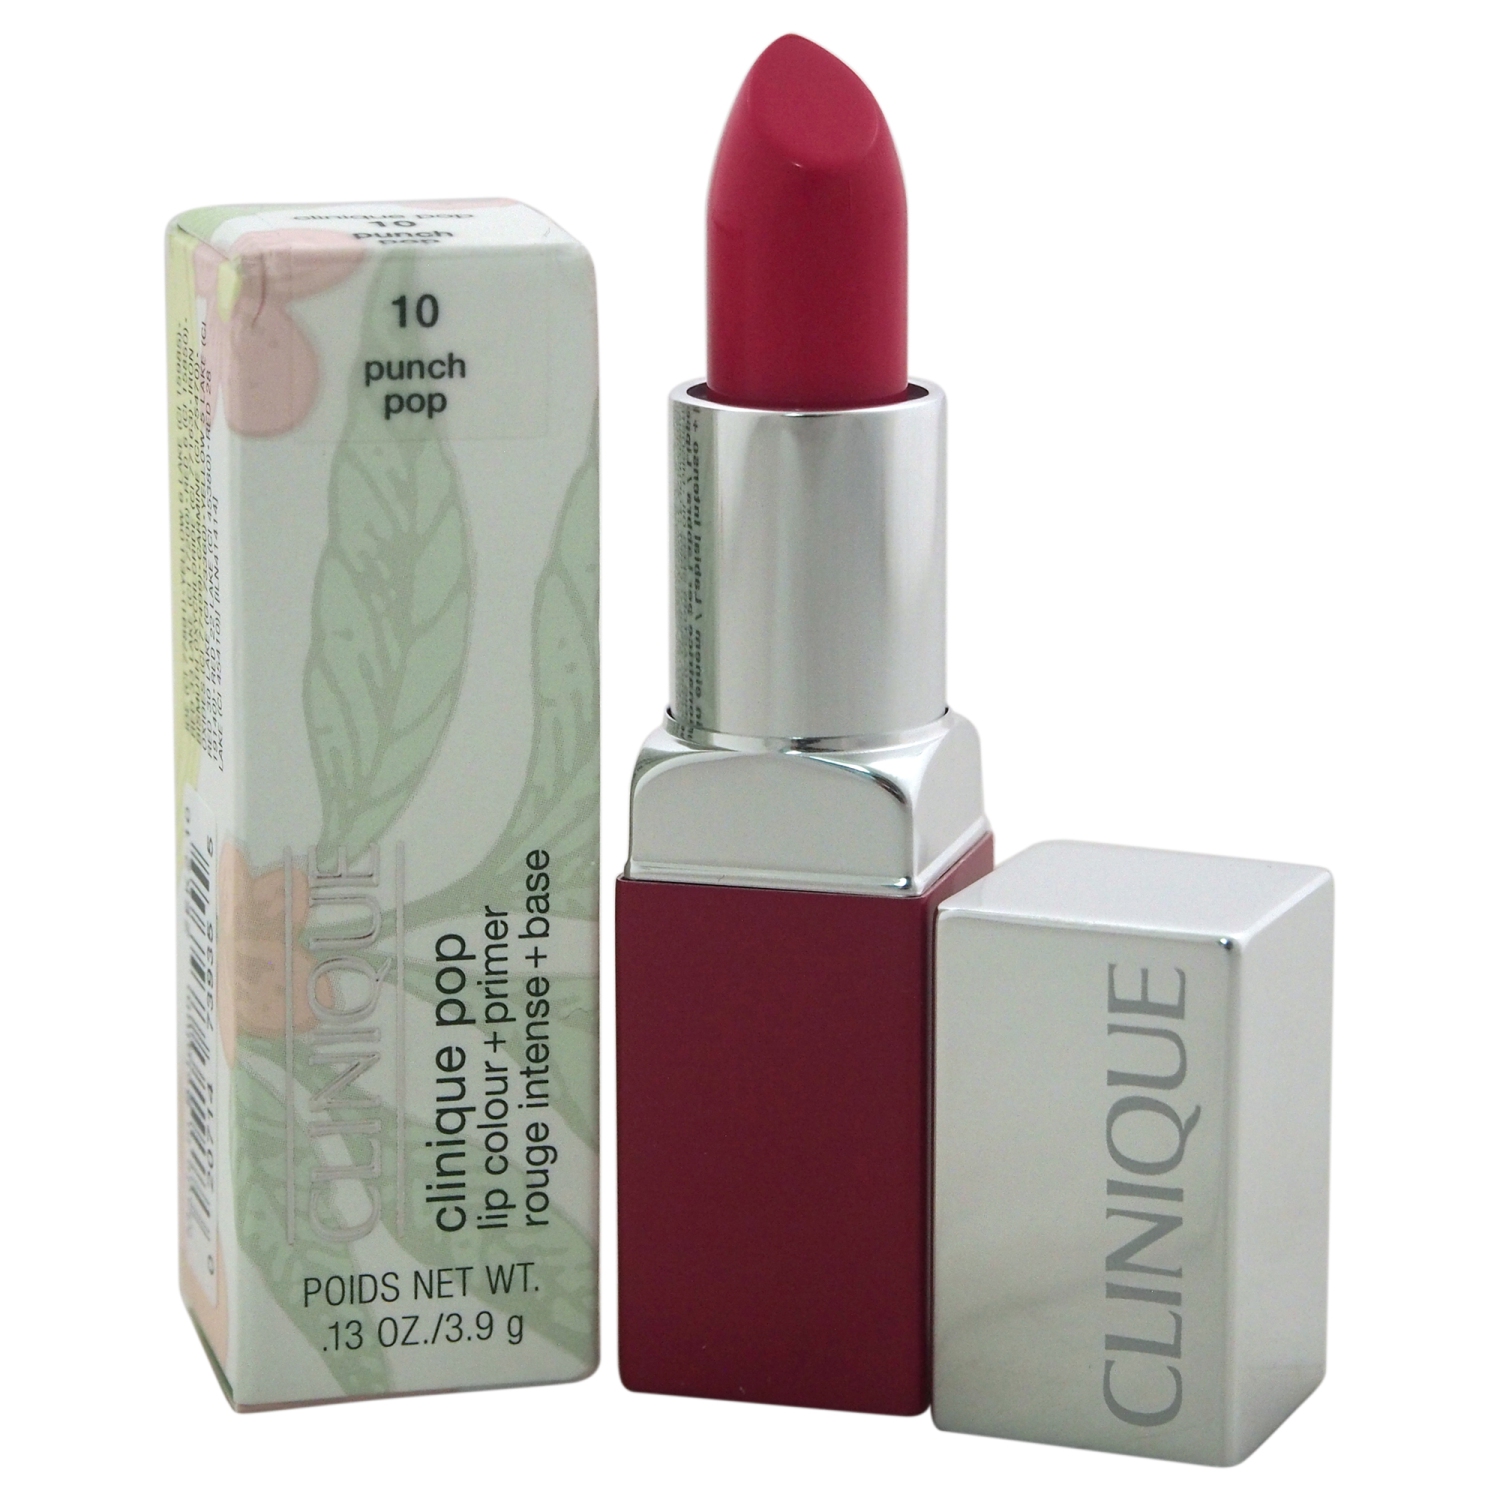 Clinique Pop Lip Colour + Primer - # 10 Punch Pop by Clinique for Women - 0.13 oz Lipstick